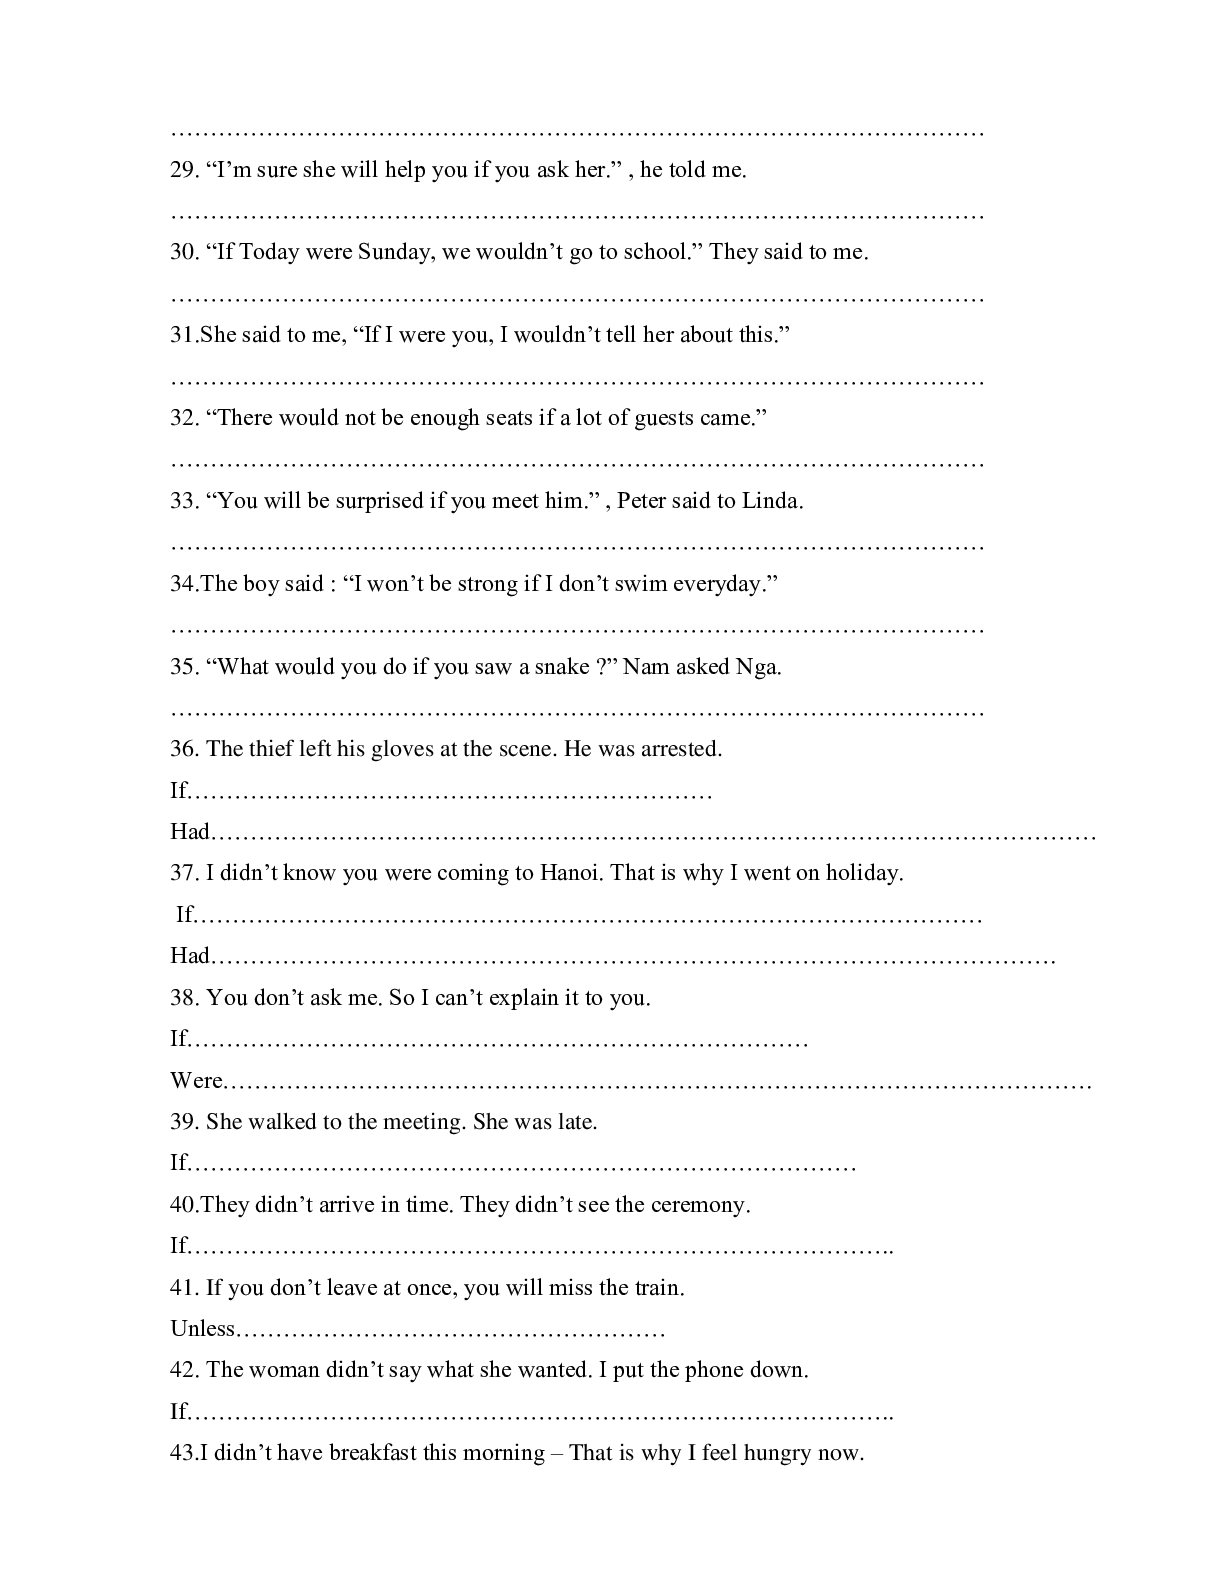 Chuyên đề: Câu điều kiện môn Tiếng Anh lớp 12 (trang 3)